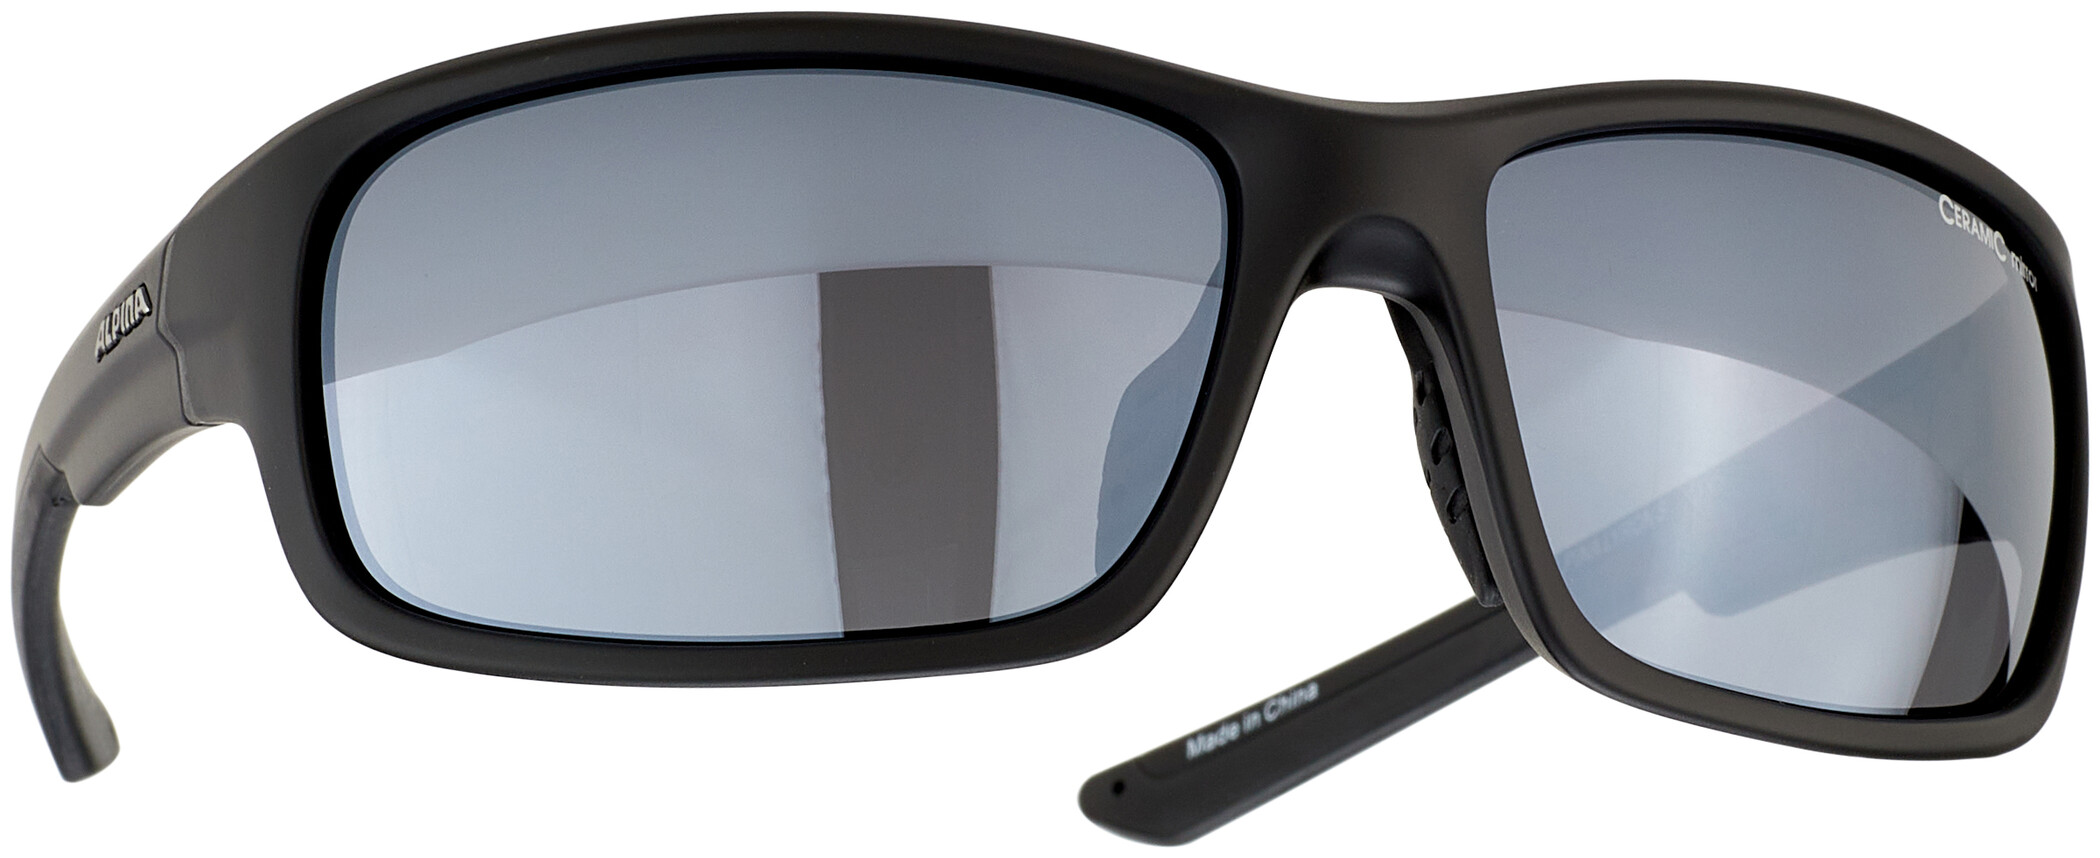 Alpina Sonnenbrille Lyron S schwarz matt schwarz verspiegelt 